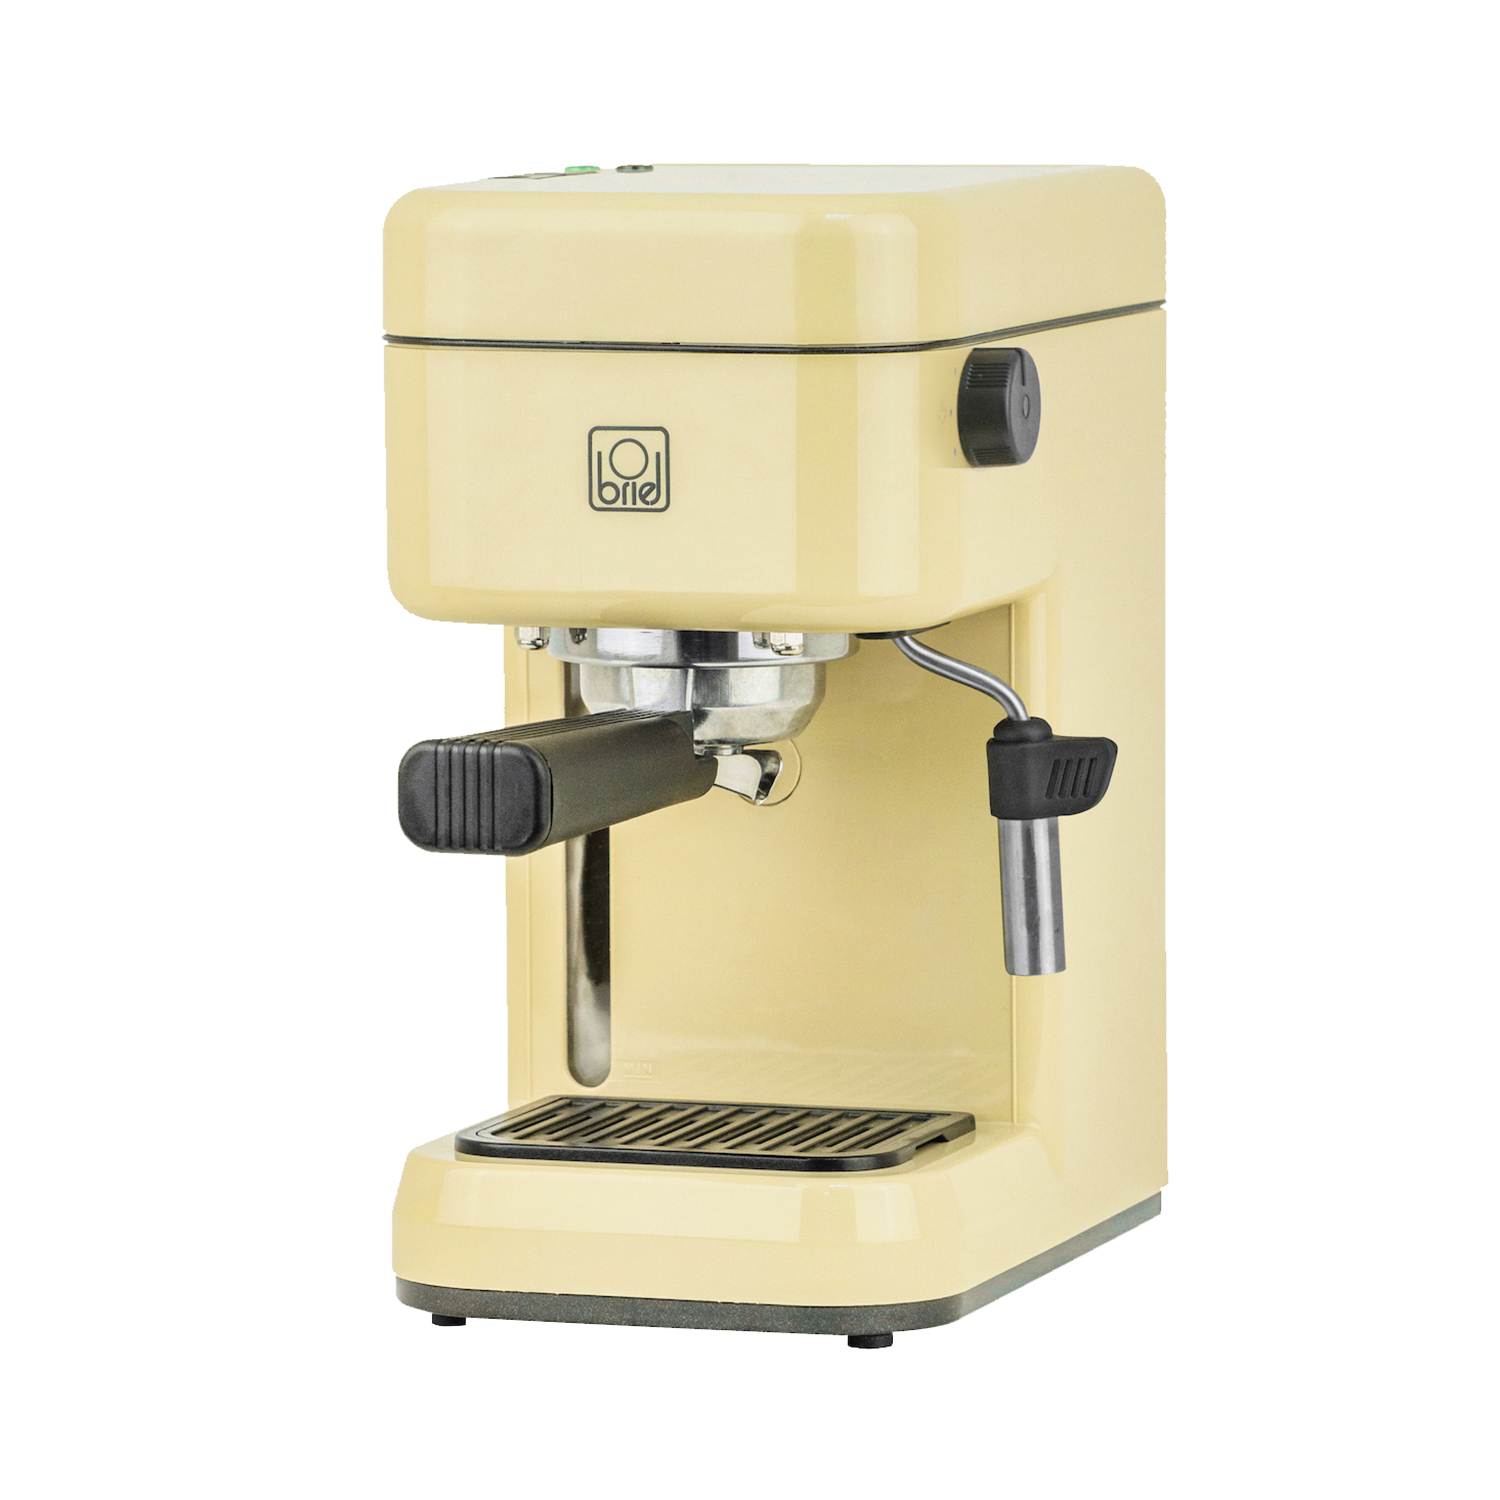 Maquina-cafe-espresso-B14-YELLOW-2.jpg